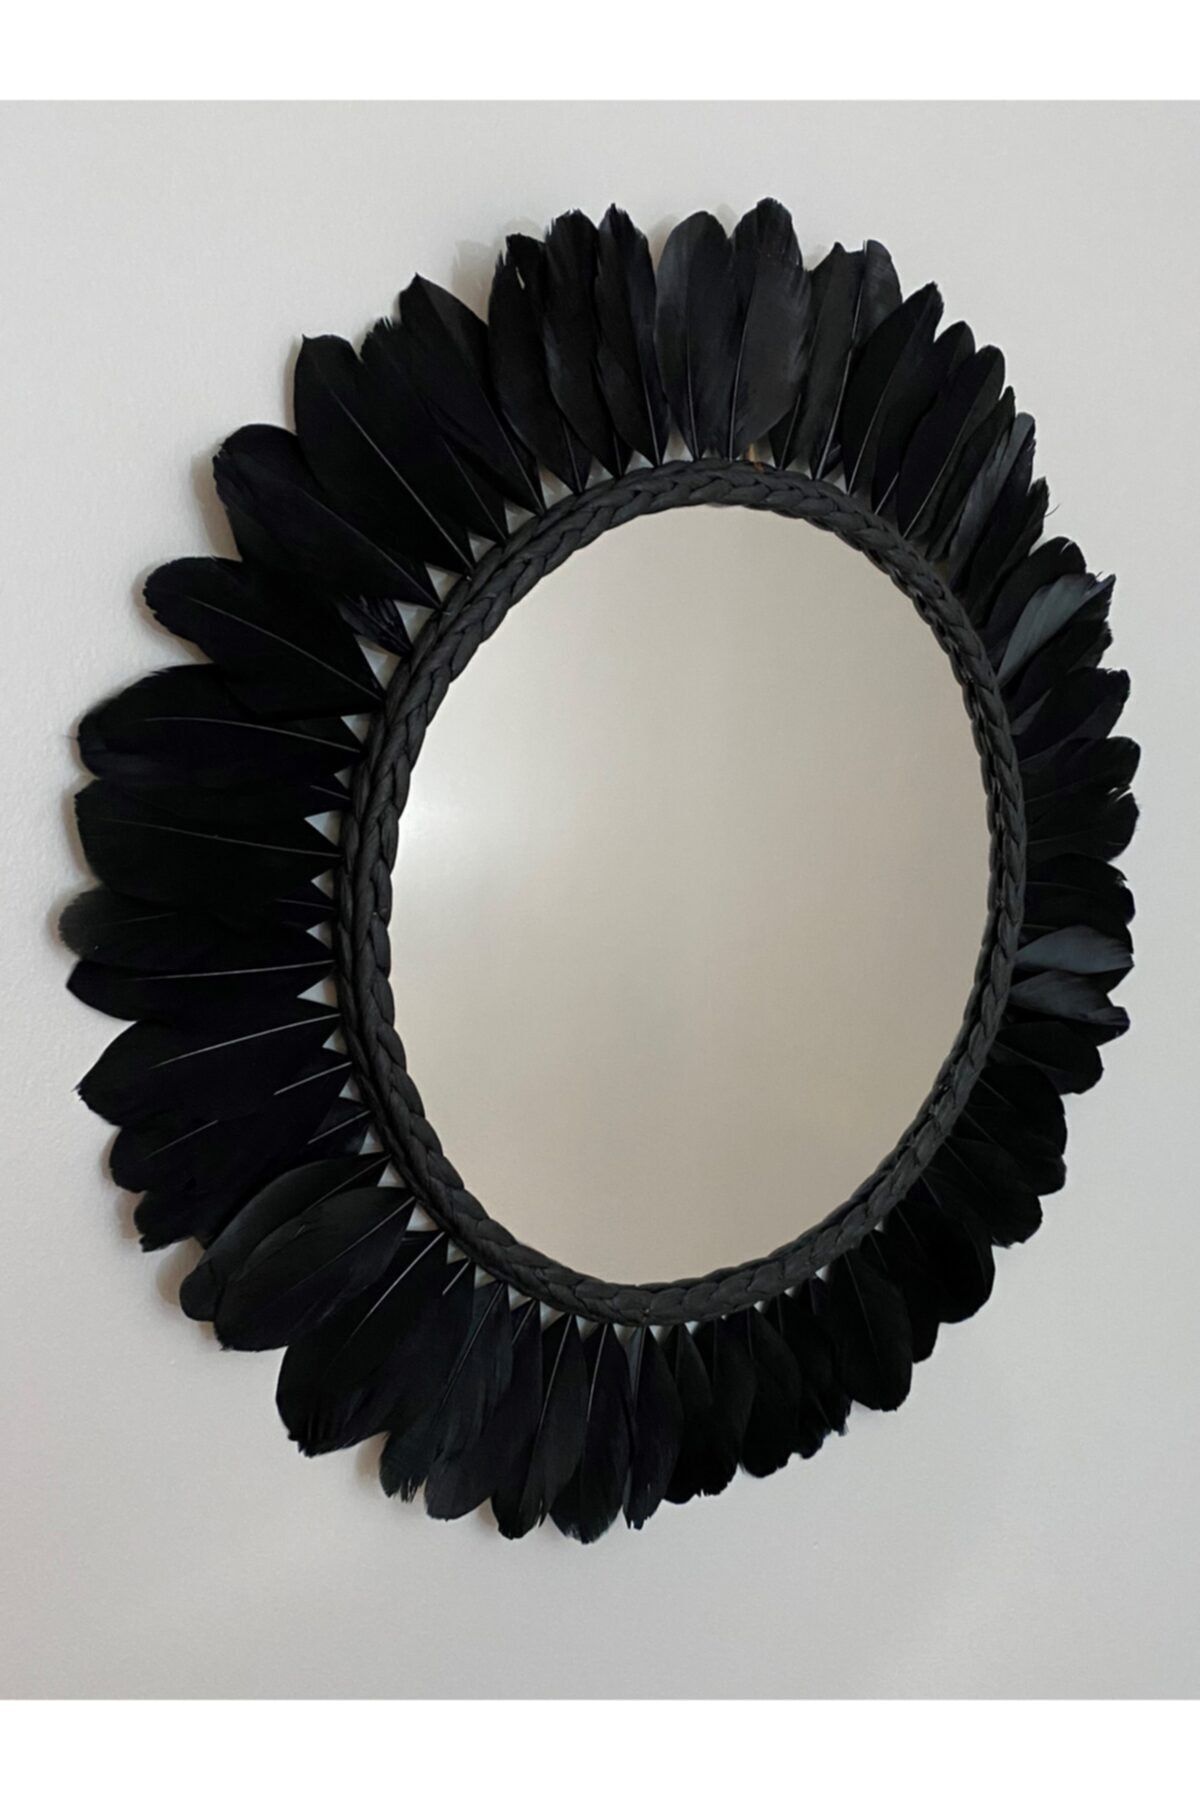 AYNADEKOR Siyah Efsane Model Ayna